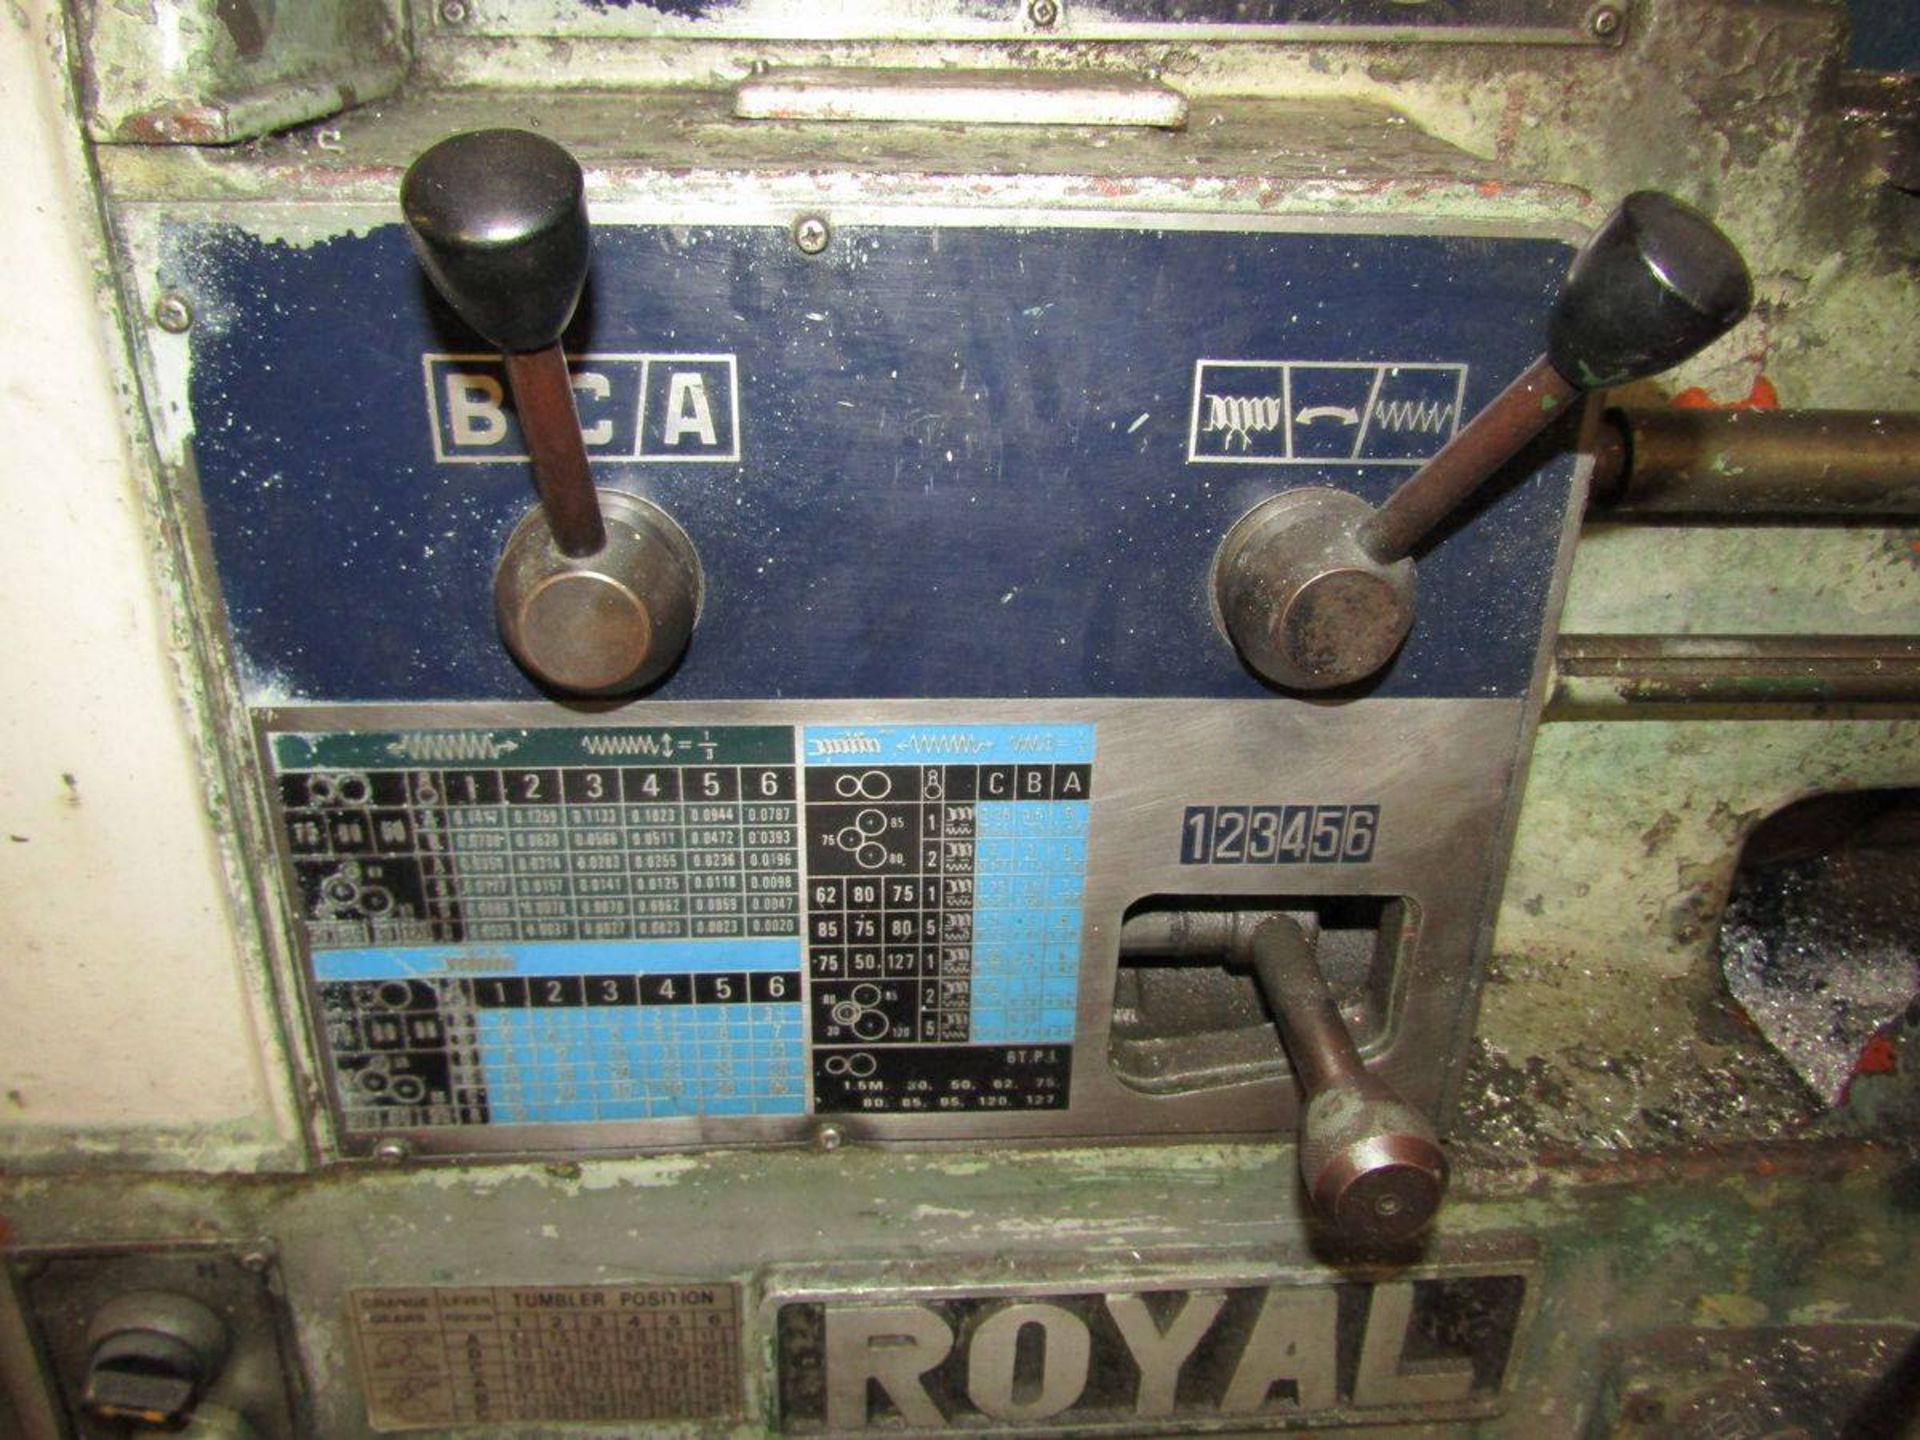 1980 Royal TSL-800D Engine Lathe - Image 6 of 9